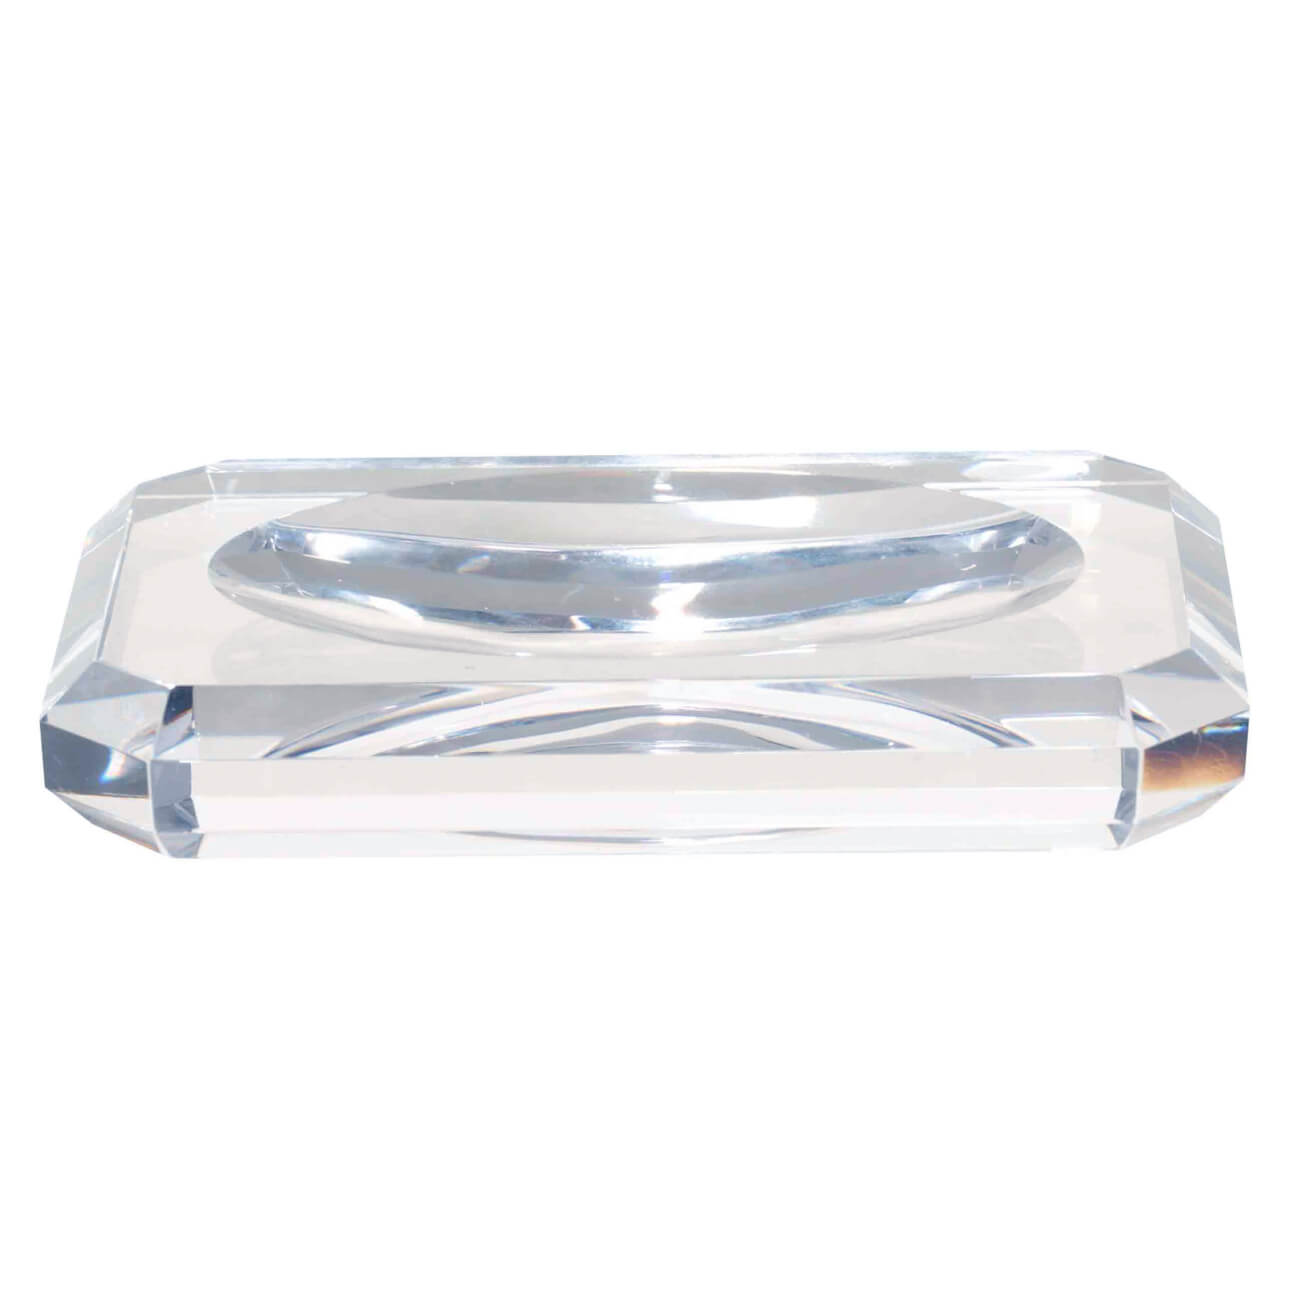 Мыльница, 12х8 см, стекло, прямоугольная, Грани, Shower Crystal Glance двойная полочка для мыла мыльница bemeta